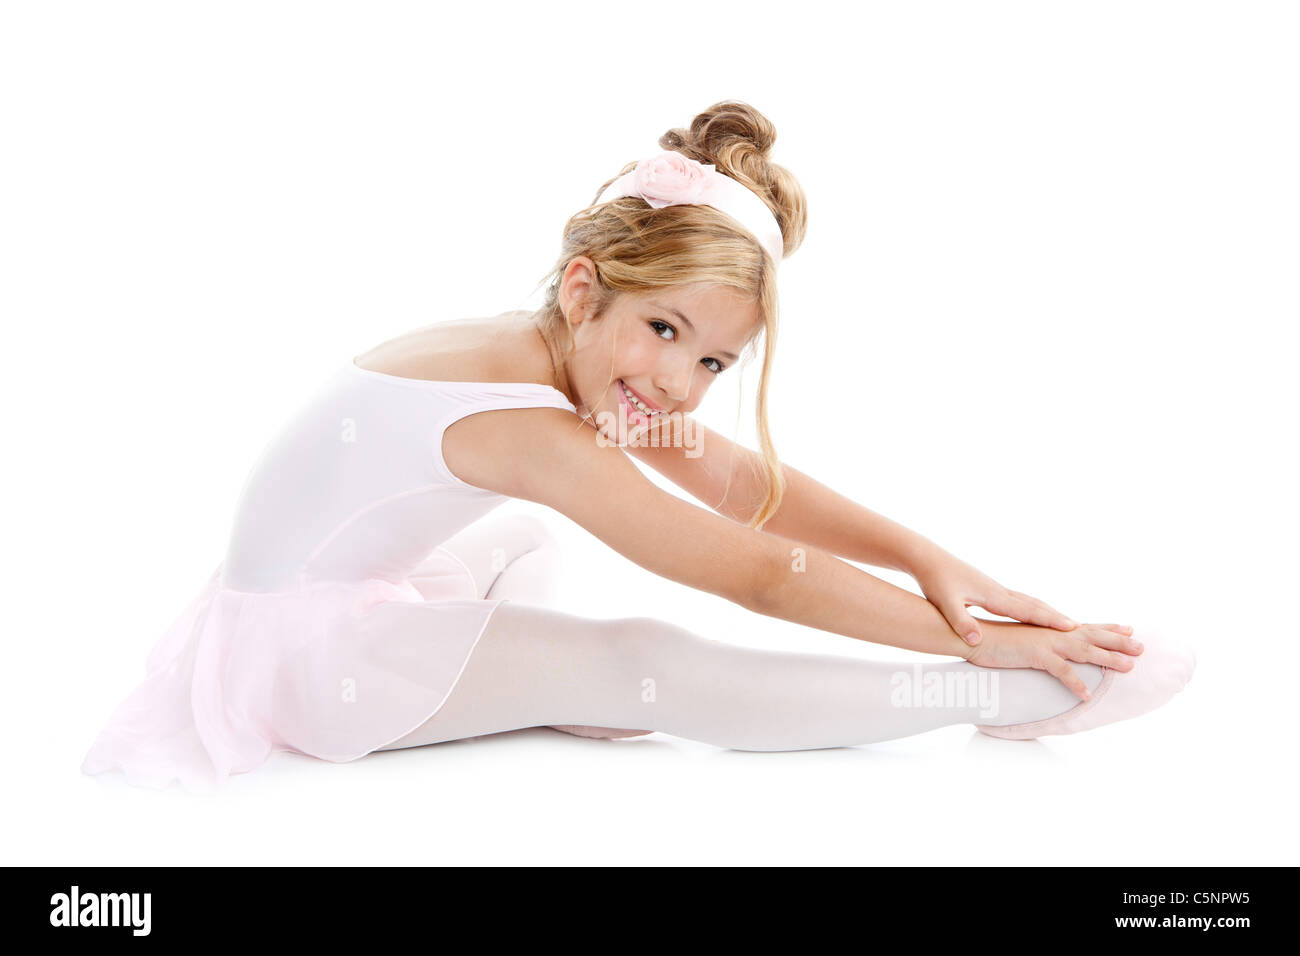 Ballerina kleine Balletttänzerin Kinder erstreckt sich auf weißen Boden sitzend Stockfoto